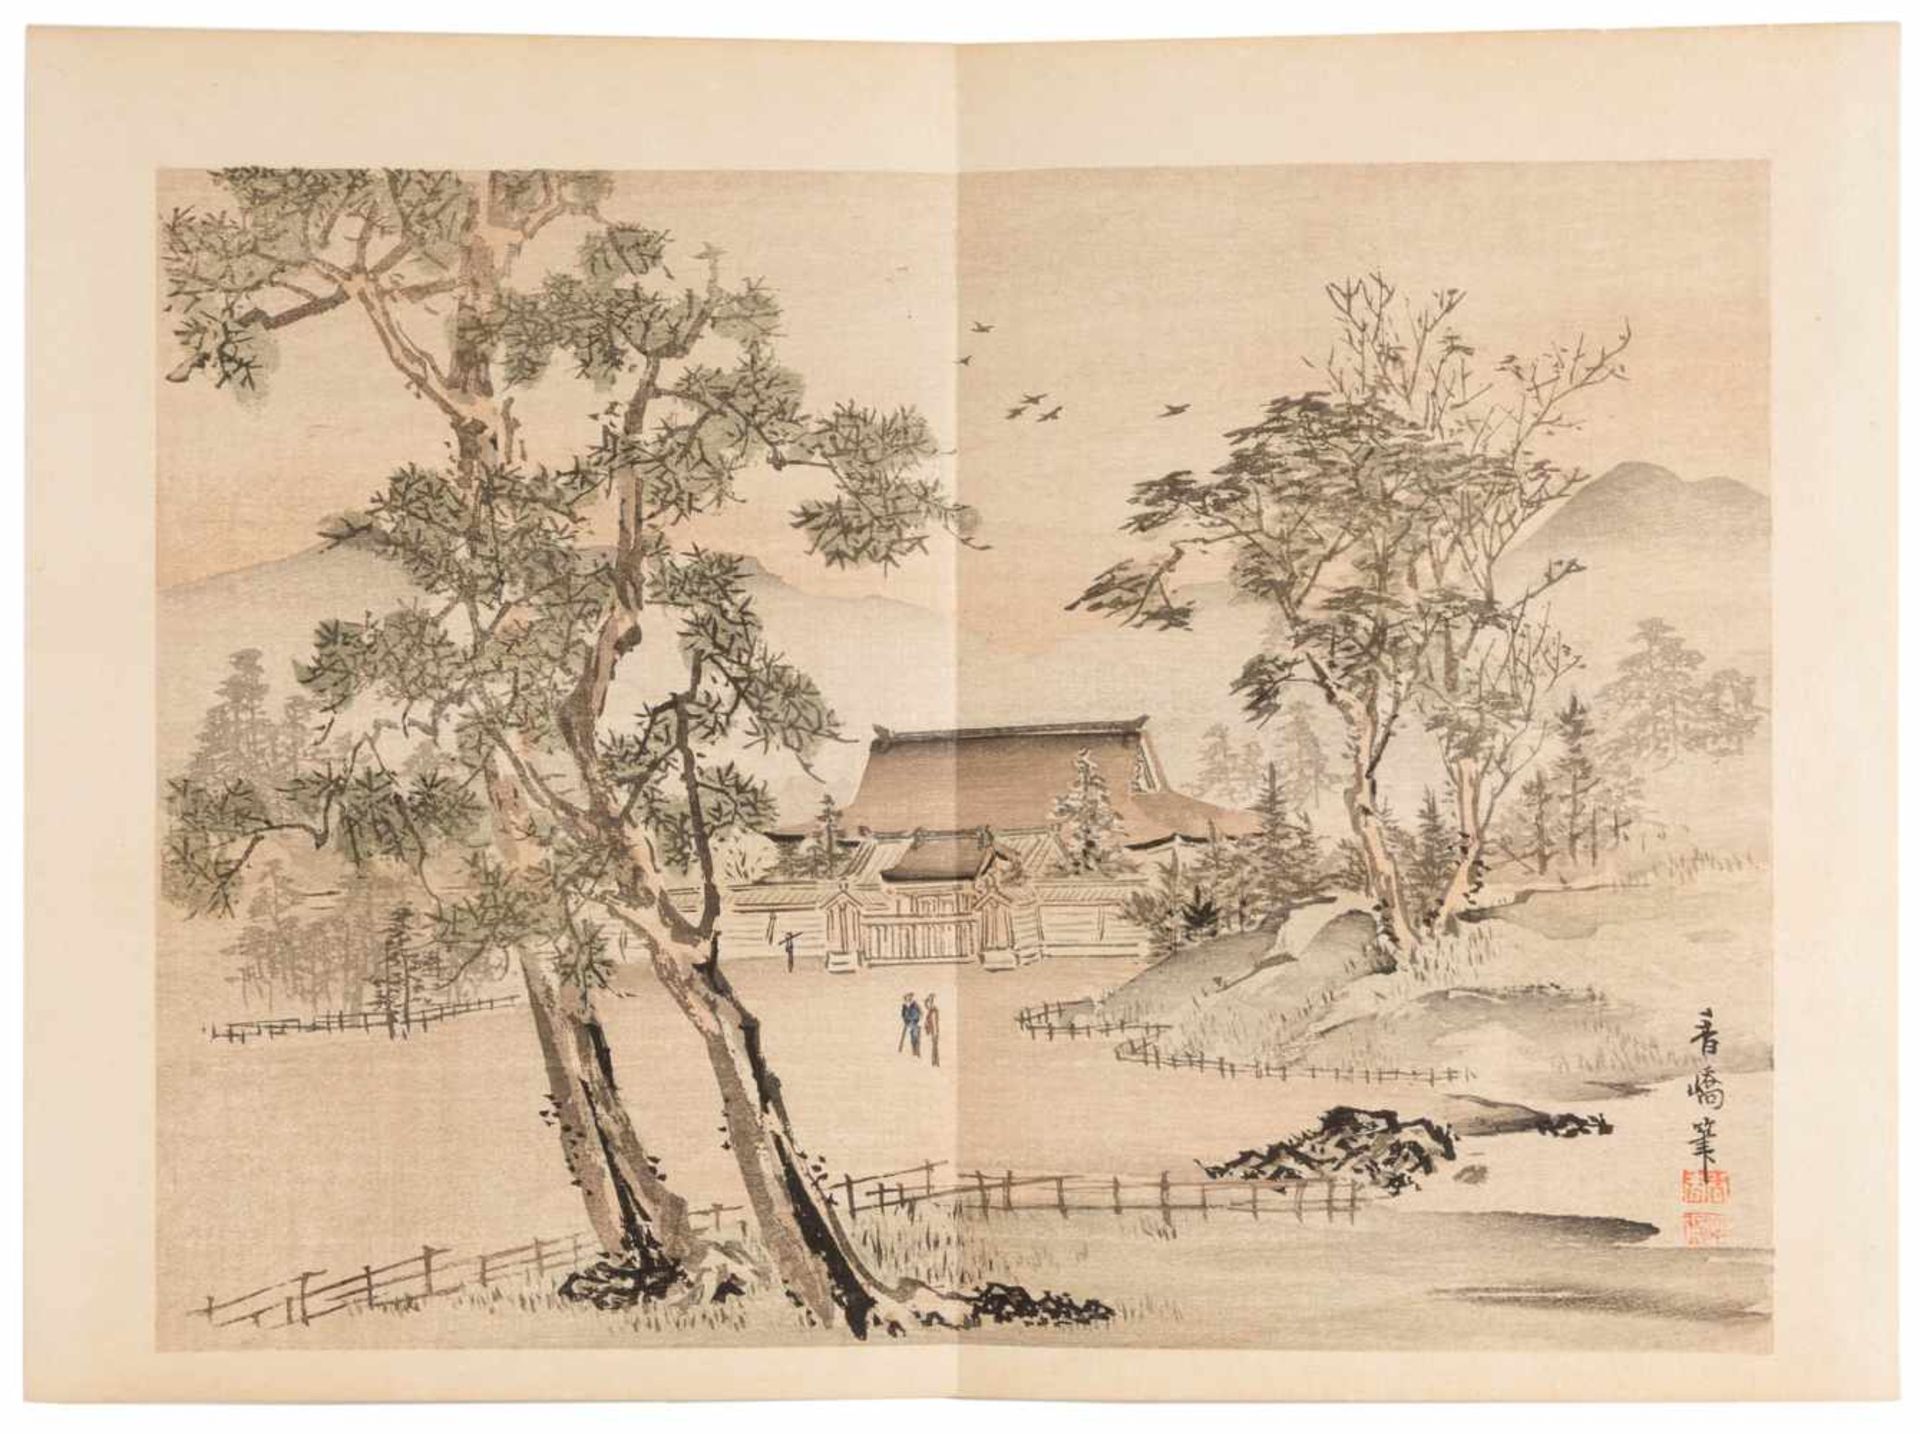 DREI BÜCHER MIT LANDSCHAFTLICHEN SZENEN Japan, 1895 Druck auf Papier. Ca. 23,5 cm x 16 cm. - Bild 5 aus 7